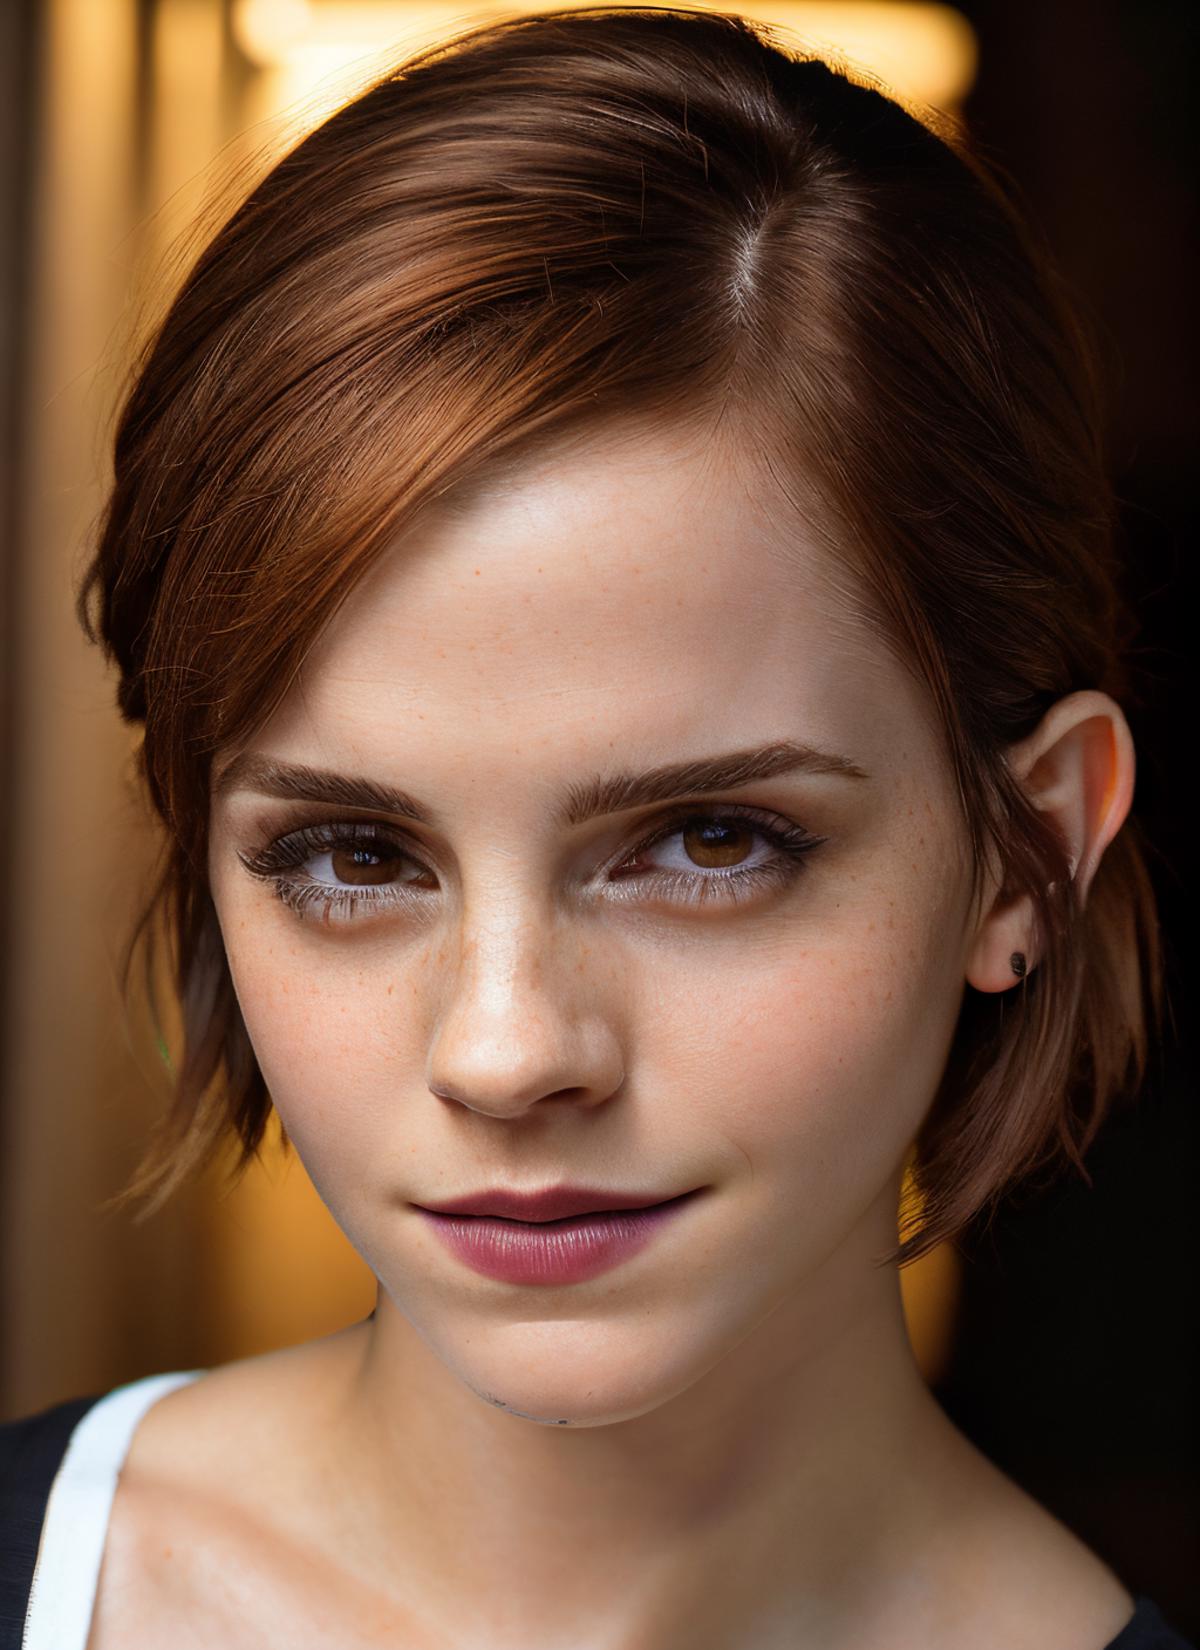 Emma Watson (present days) image by astragartist